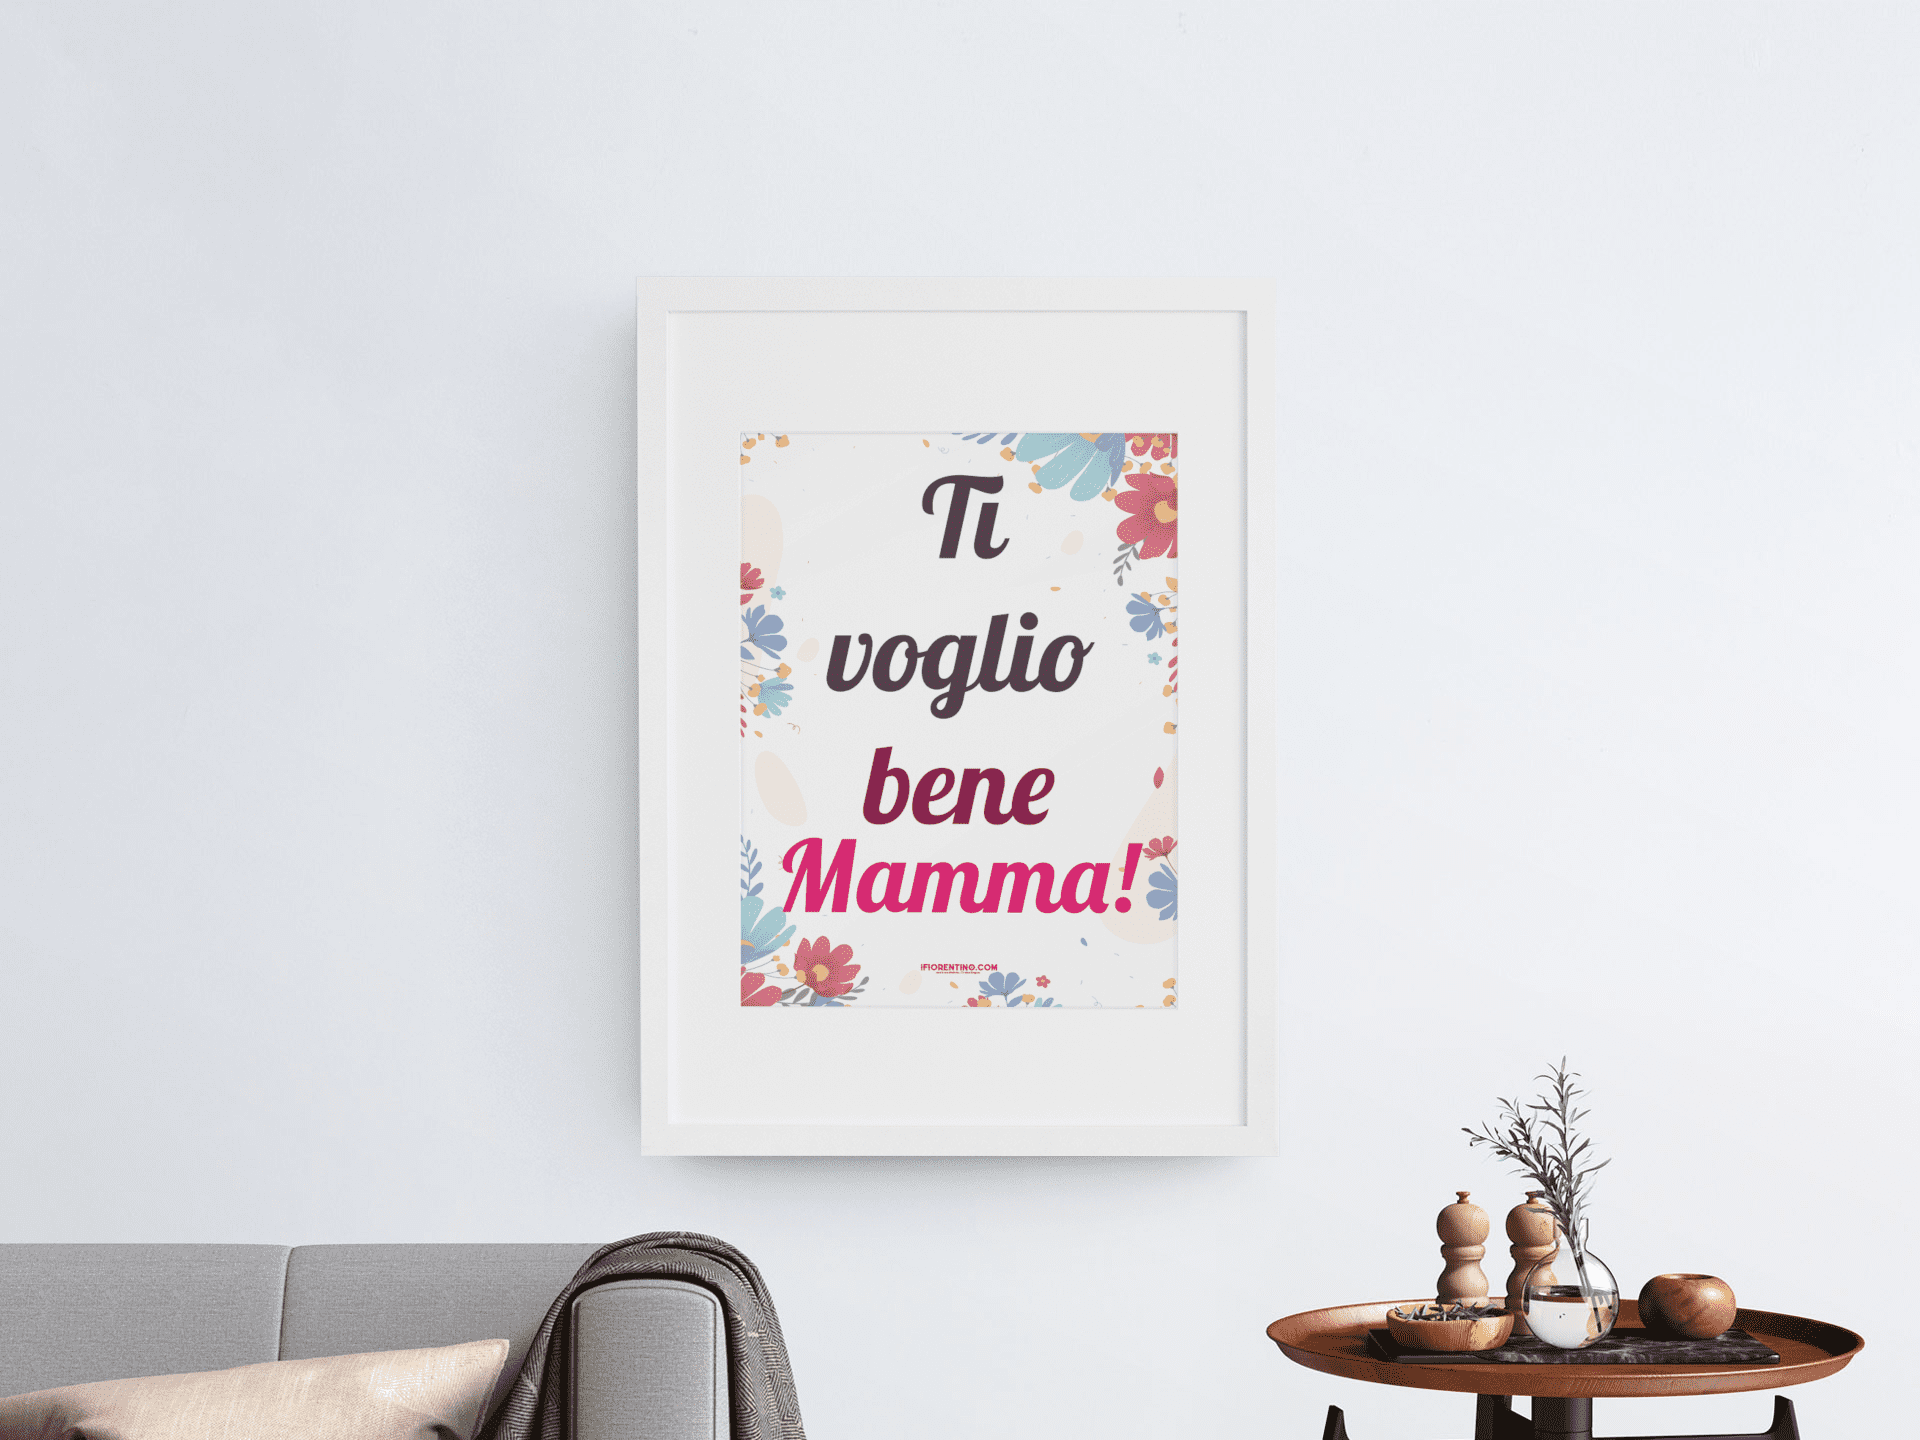 TI VOGLIO / VOGLIAMO BENE MAMMA! Fantasia floreale - poster fiorentini - poster firenze - regalo fiorentino - fiorentino  - foppeddittelo